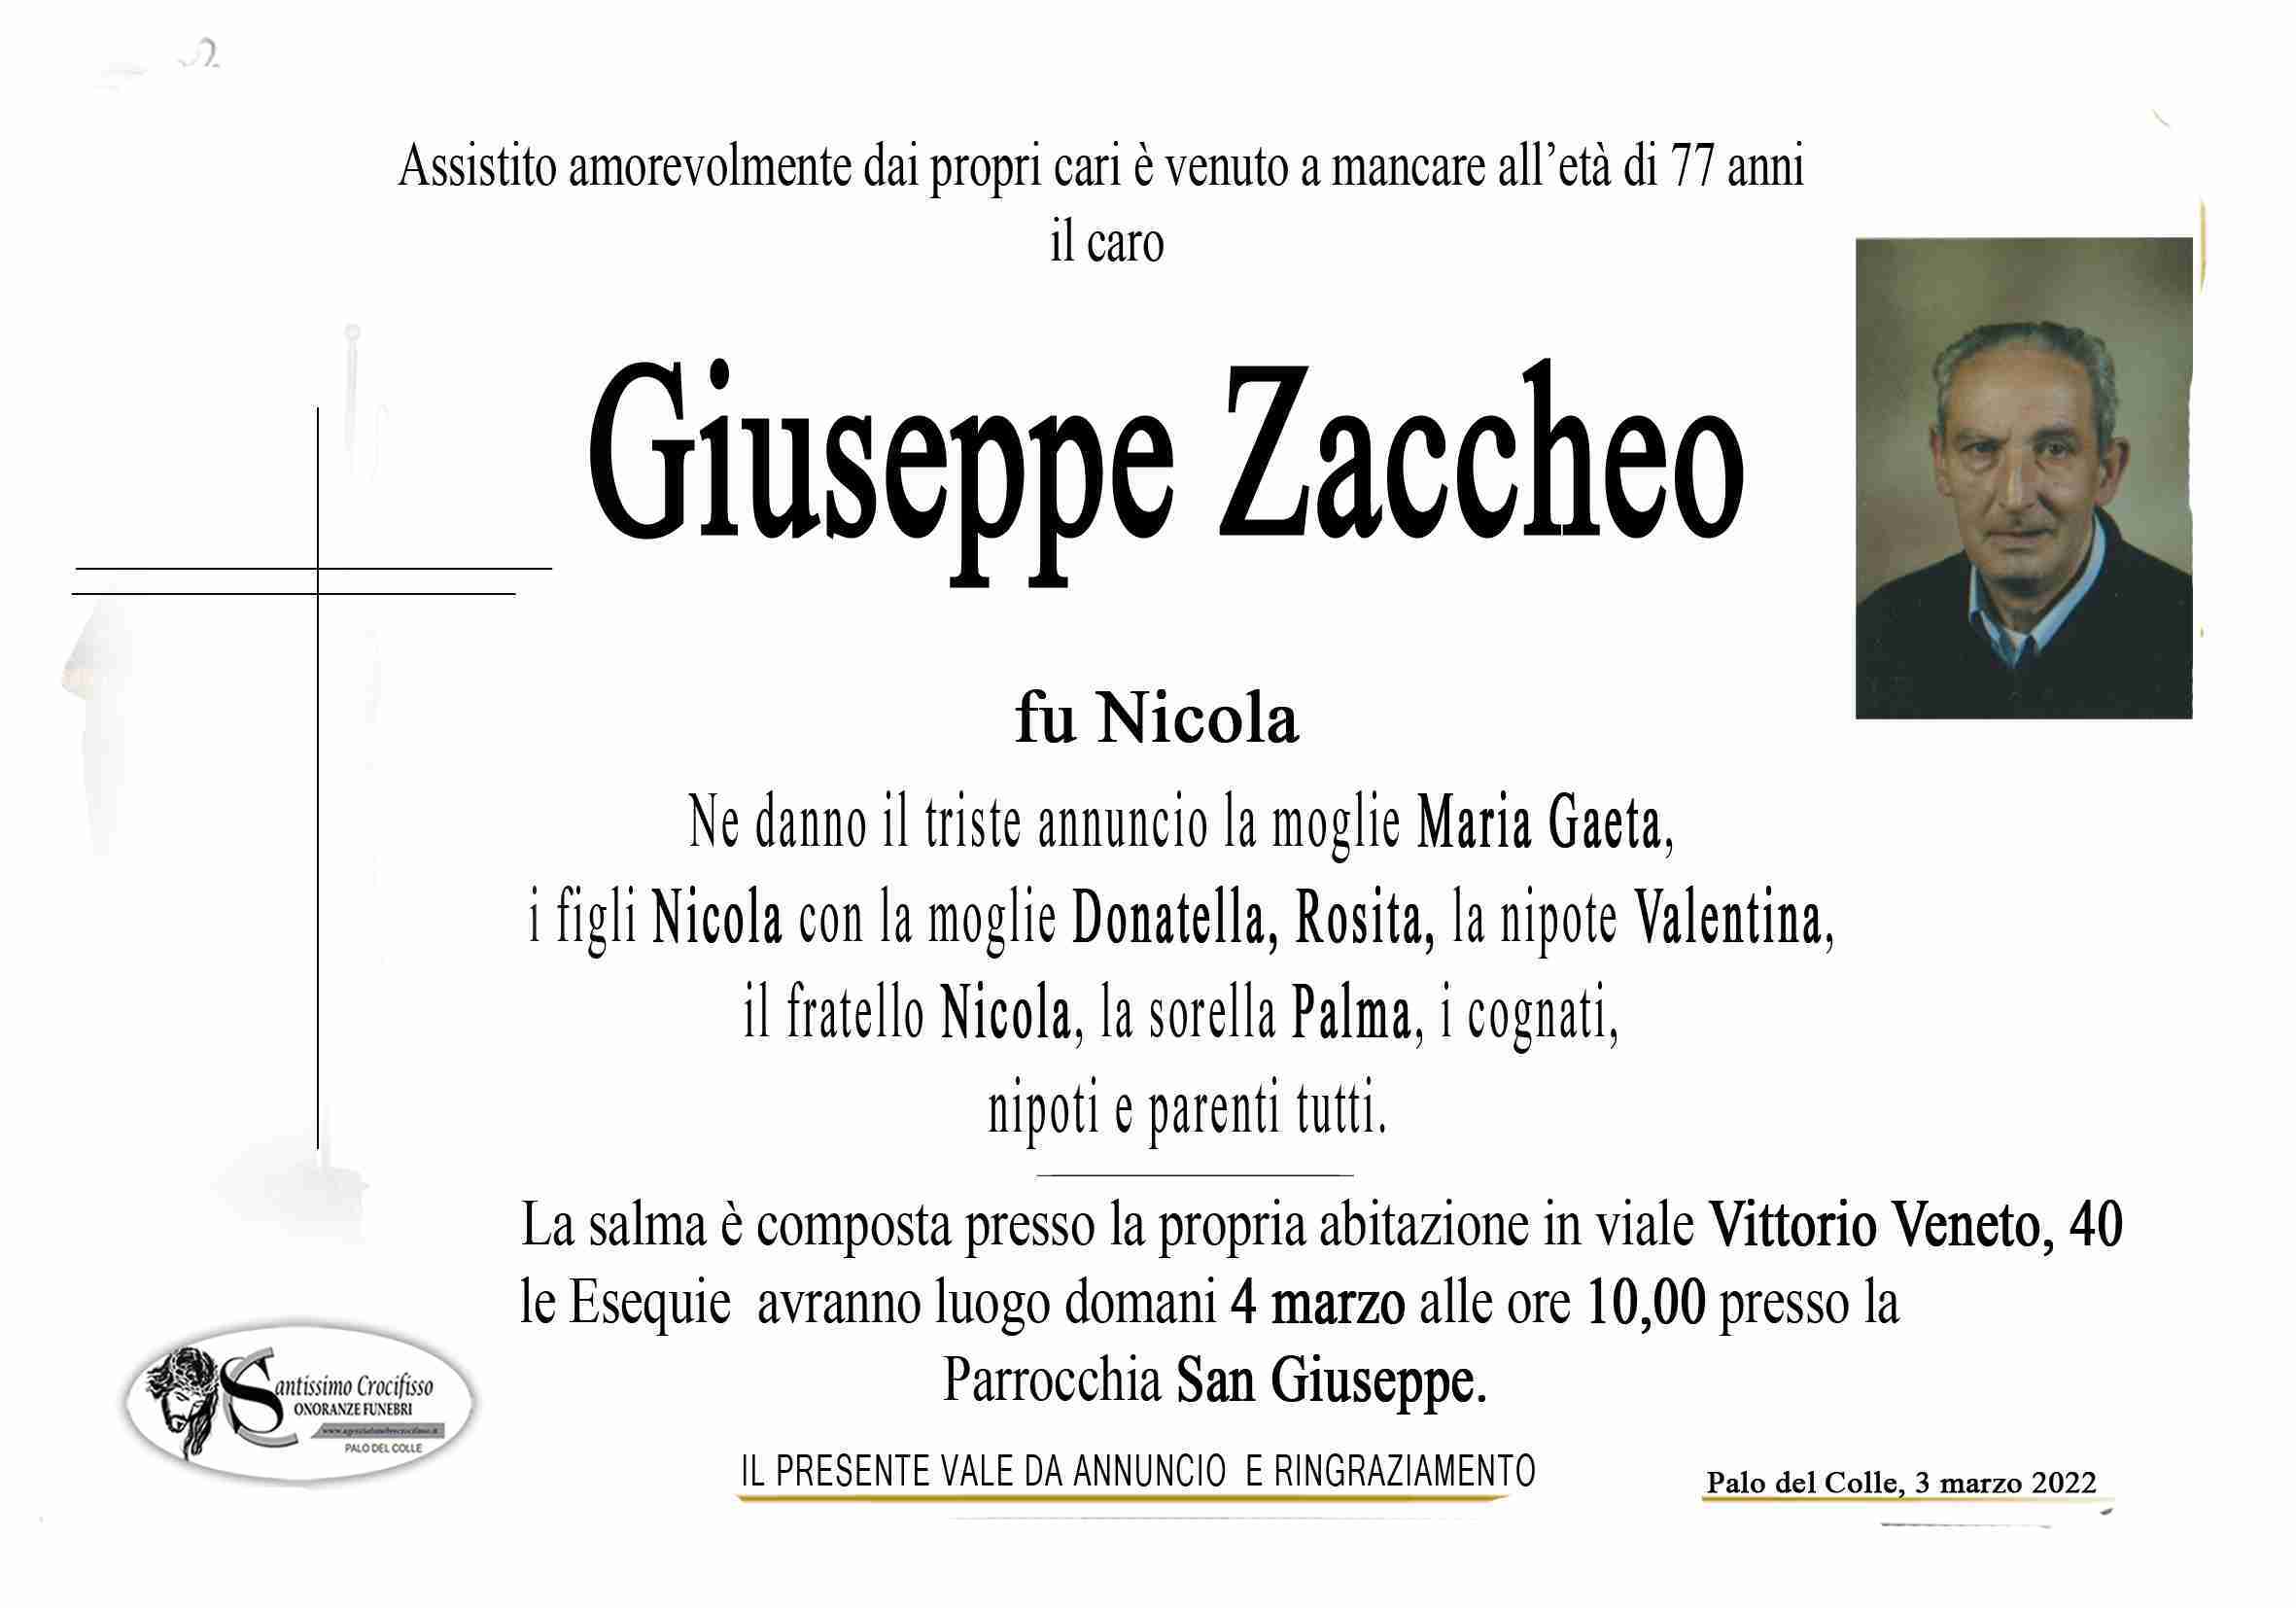 Giuseppe Zaccheo